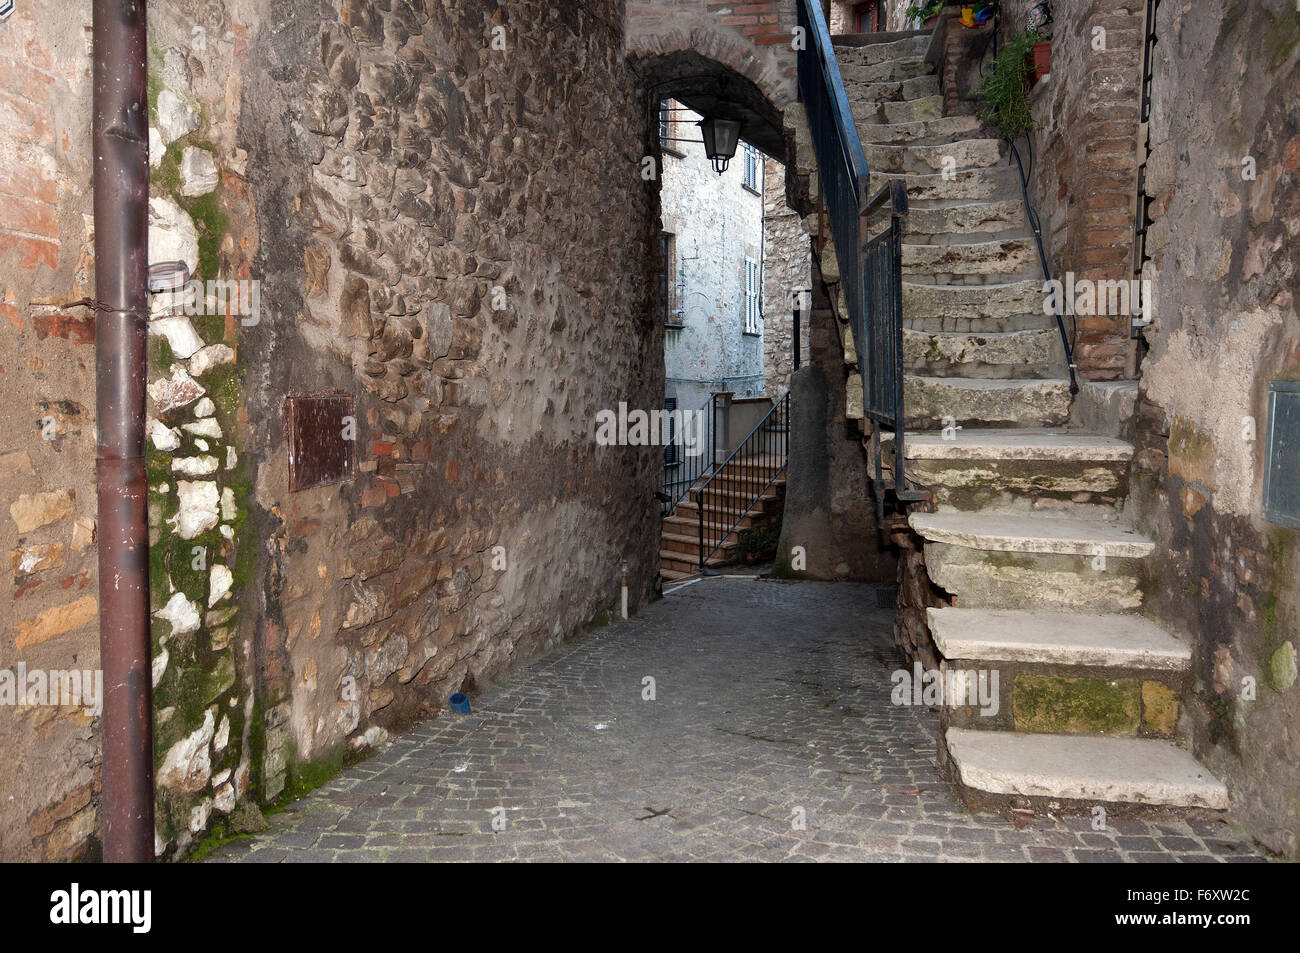 Vicolo Brutto, an alley in the village of Montecchio, Terni, Umbria, Italy Stock Photo